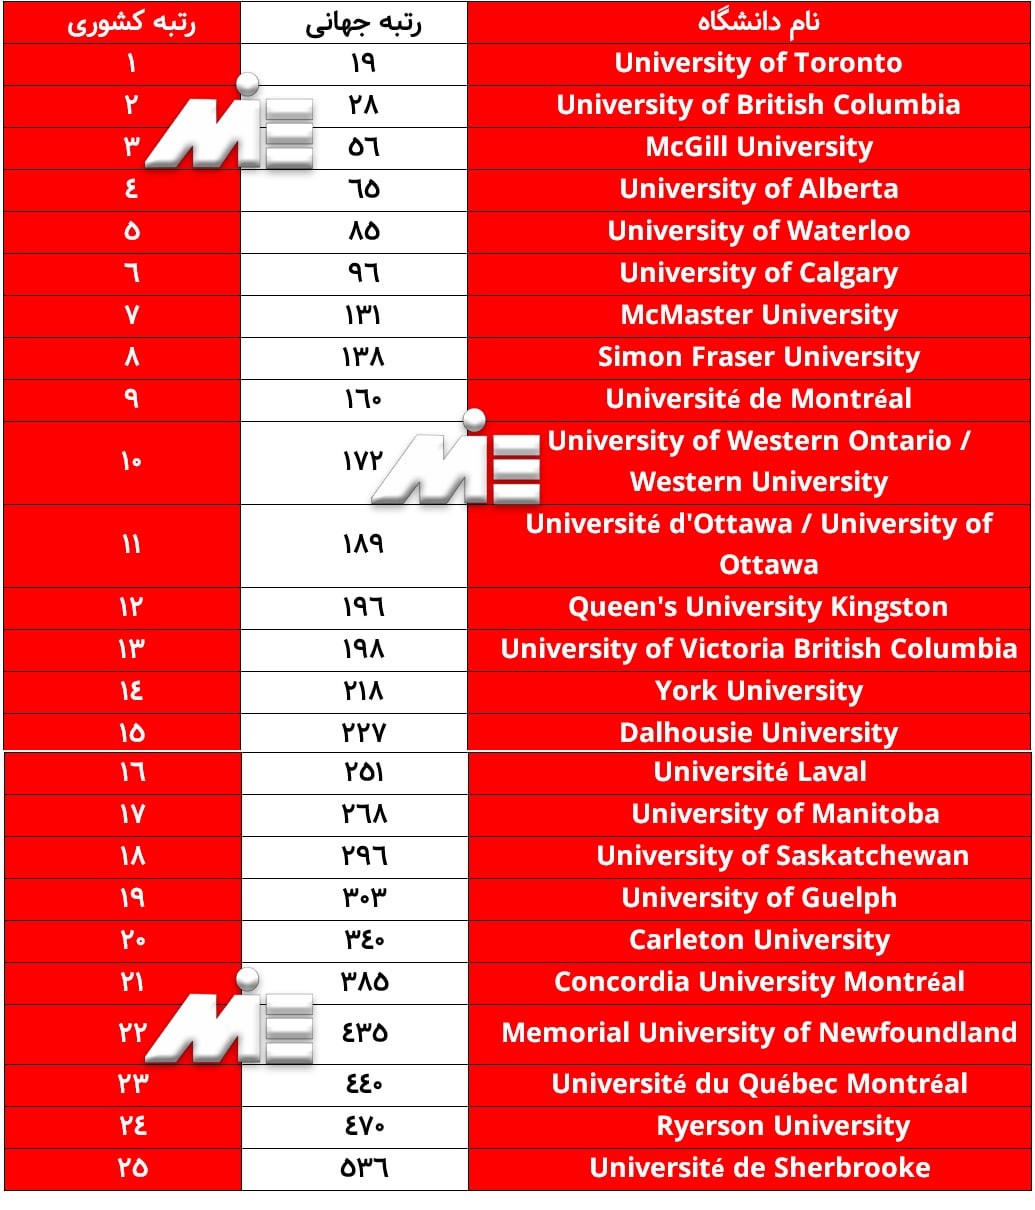 لیستی از 25 دانشگاه برتر کانادا را طبق رتبه بندی سایت webometrics در تاریخ سپتامبر 2019